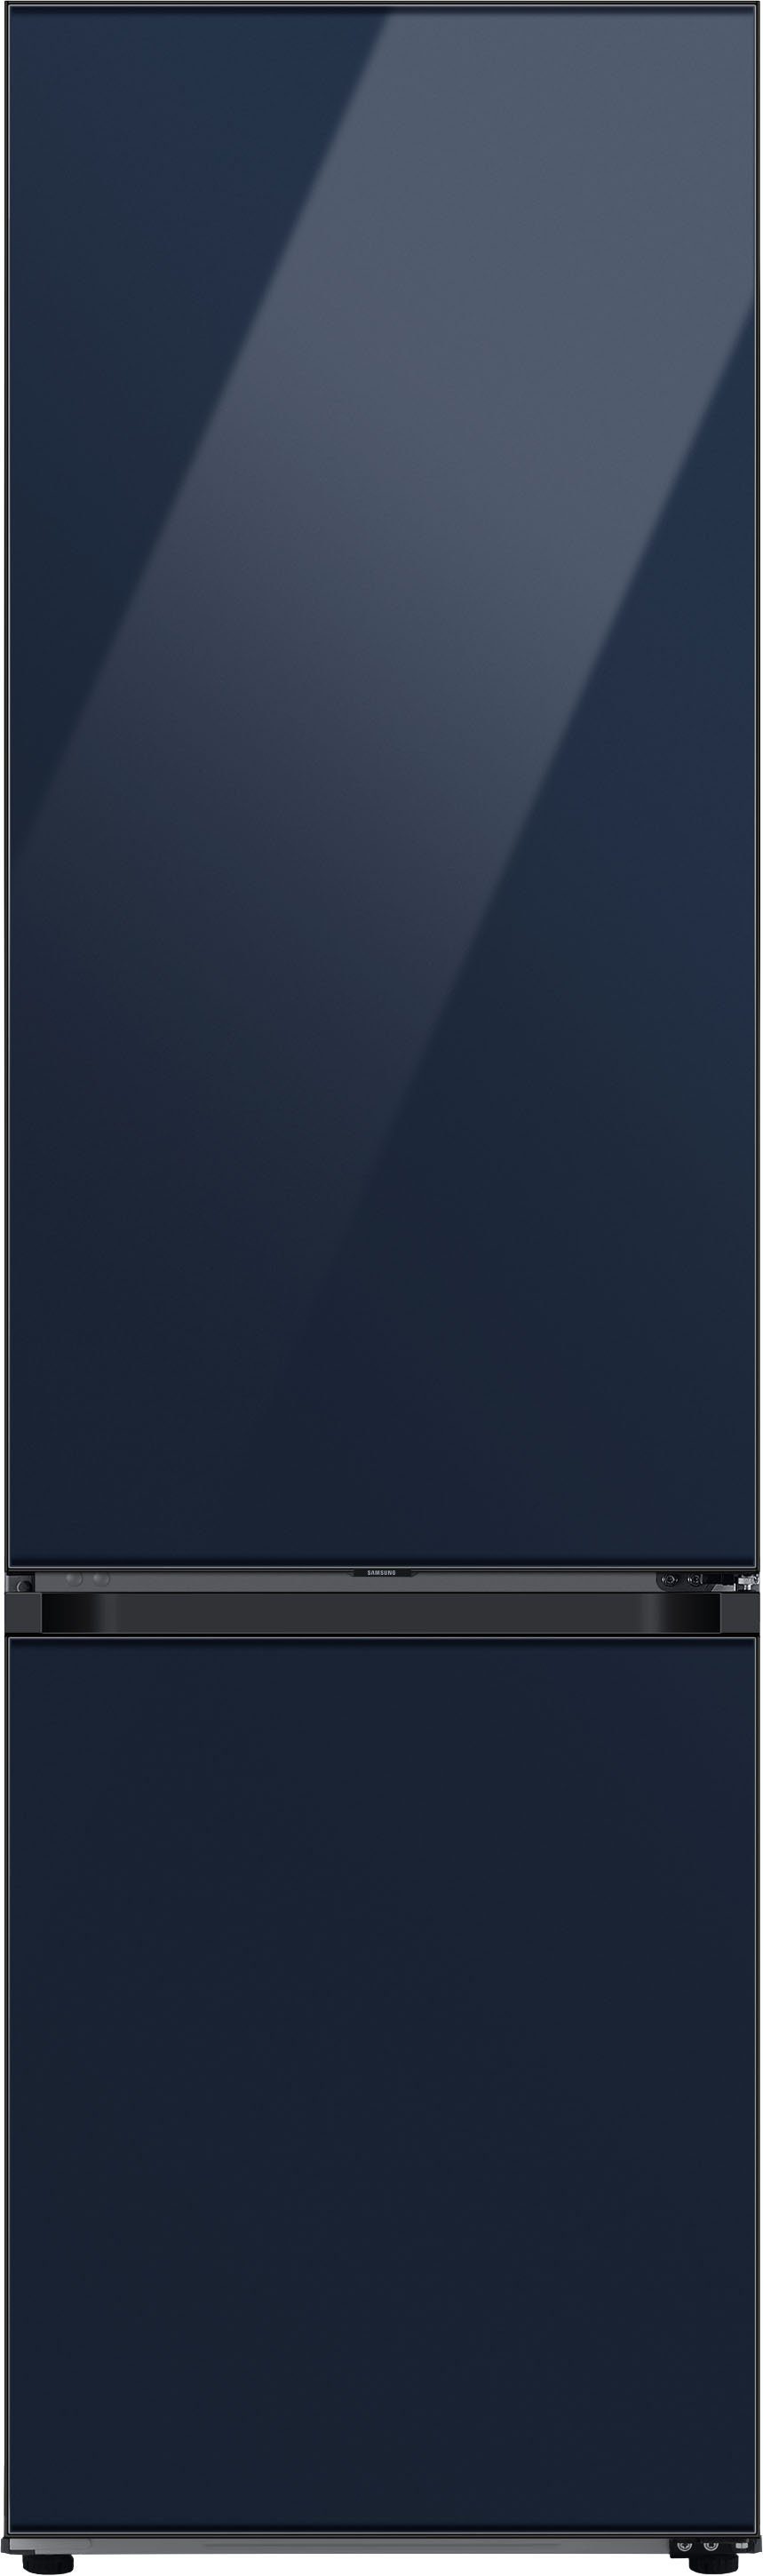 Samsung Kühl-/Gefrierkombination Bespoke RL38A6B6C41, 203 cm 59,5 cm hoch, breit